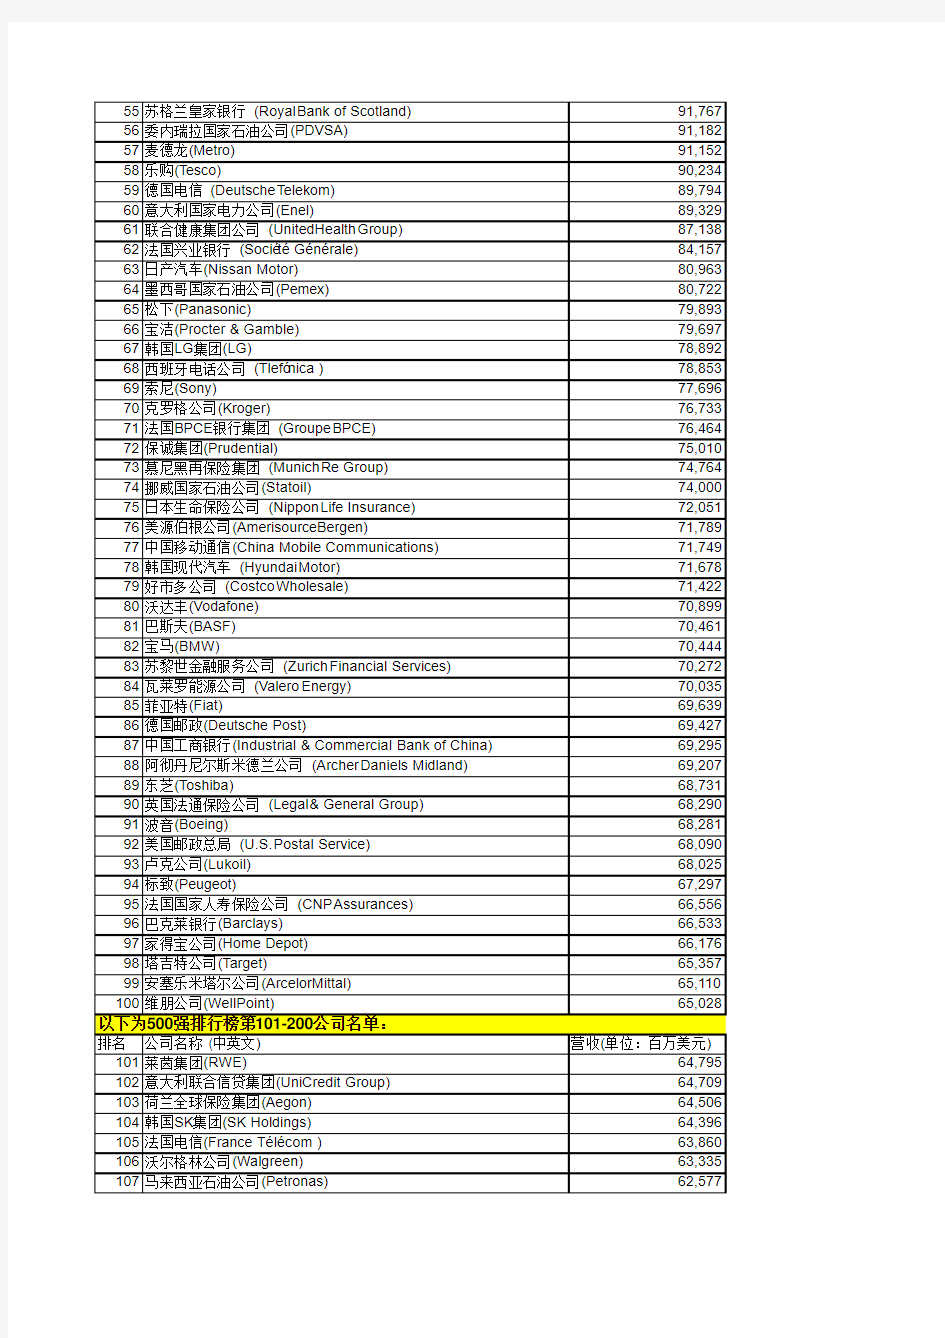 2010年世界500强企业名单Excel版本